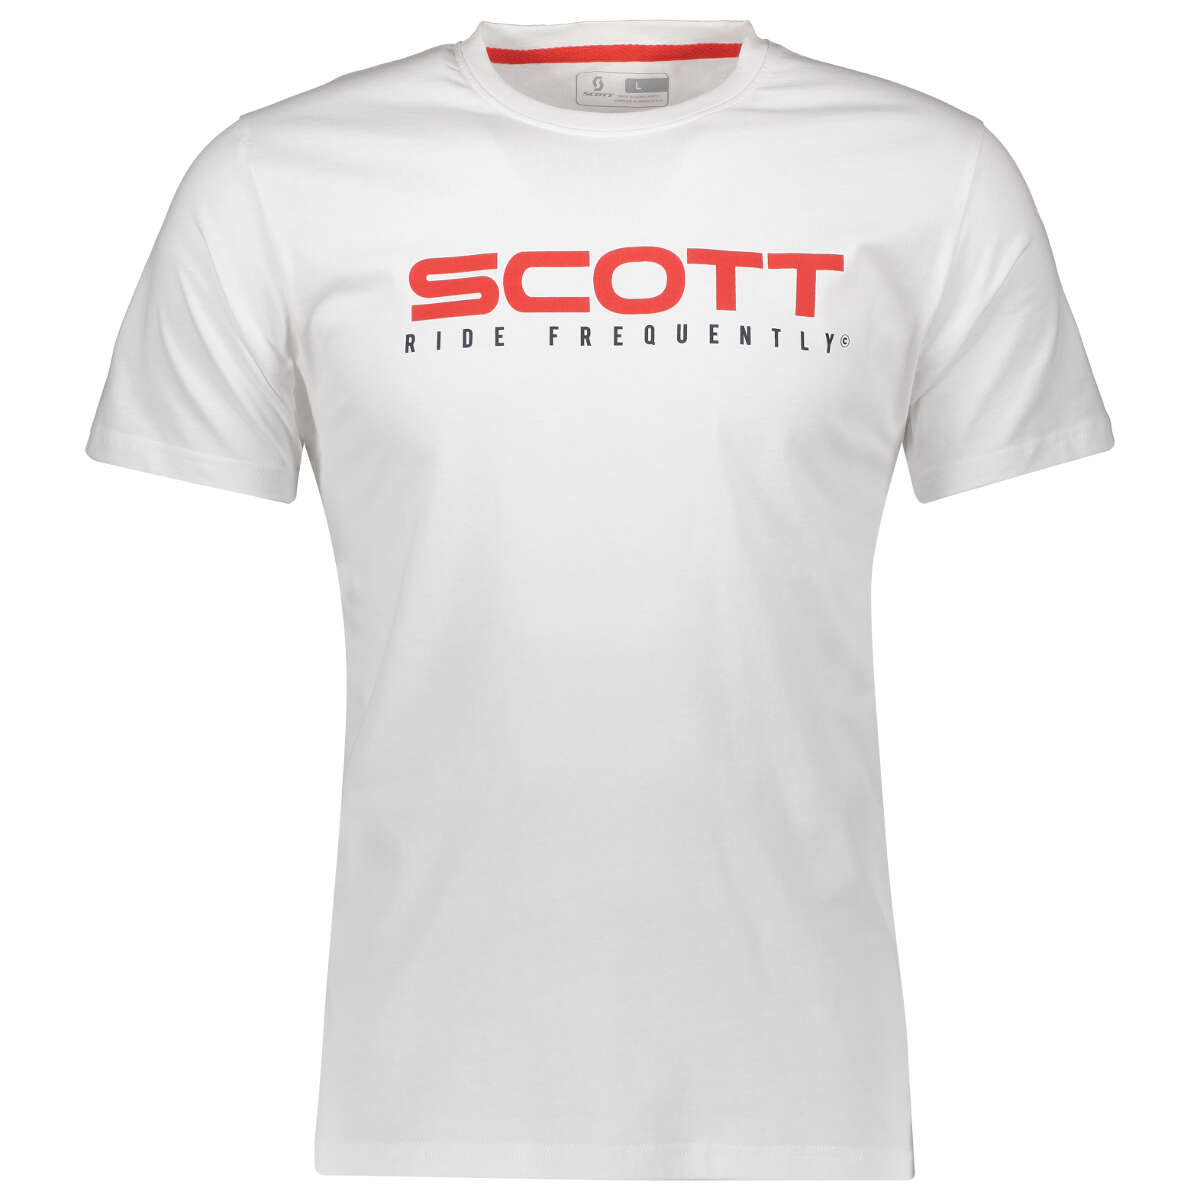 Scott T-Shirt 10 Heritage Weiß